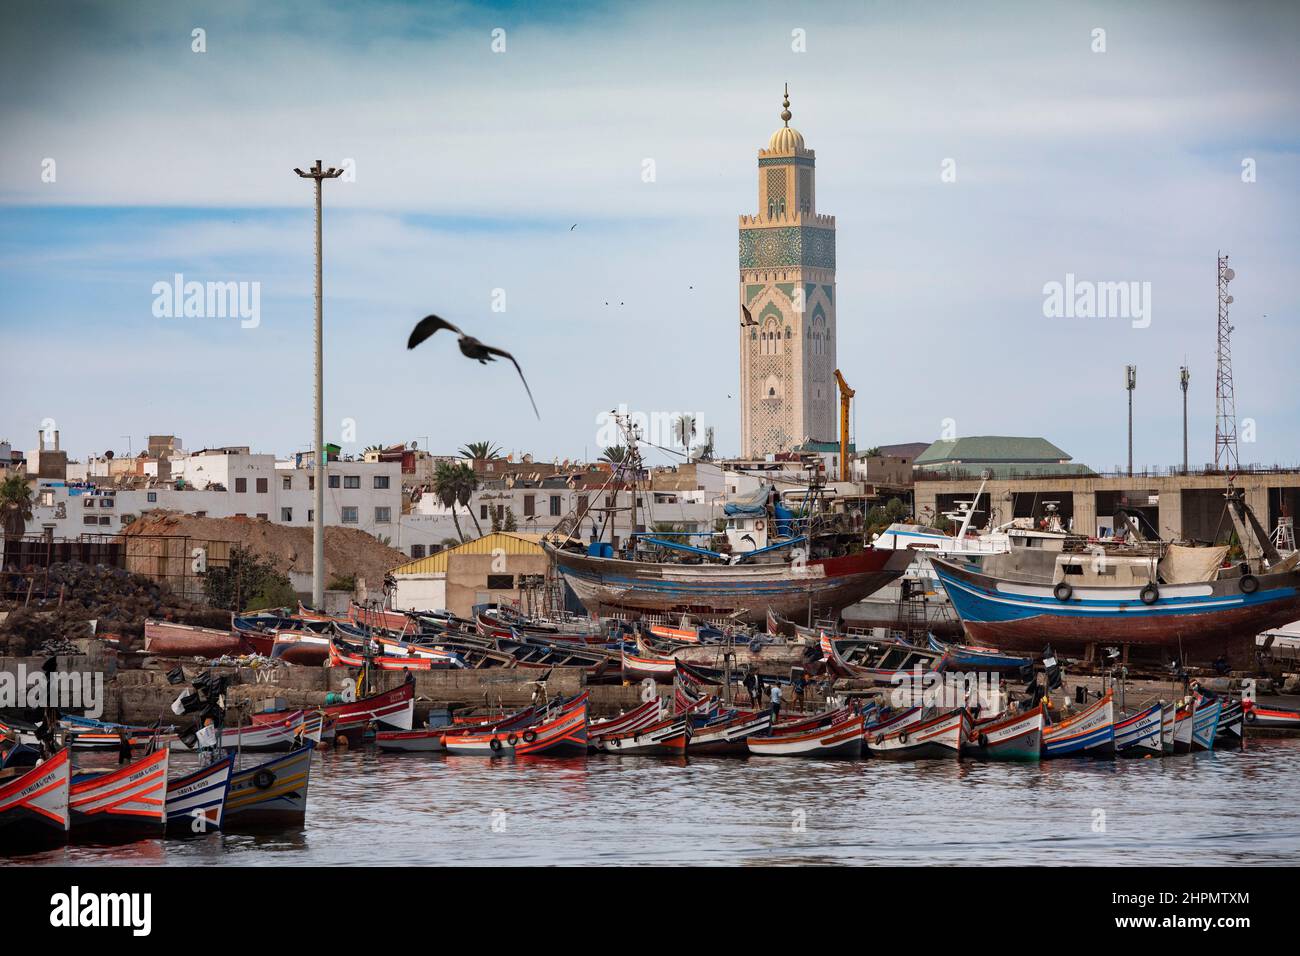 La mosquée Hassan II s'élève au-dessus d'un port de plaisance à Casablanca, Maroc, Afrique du Nord. Banque D'Images